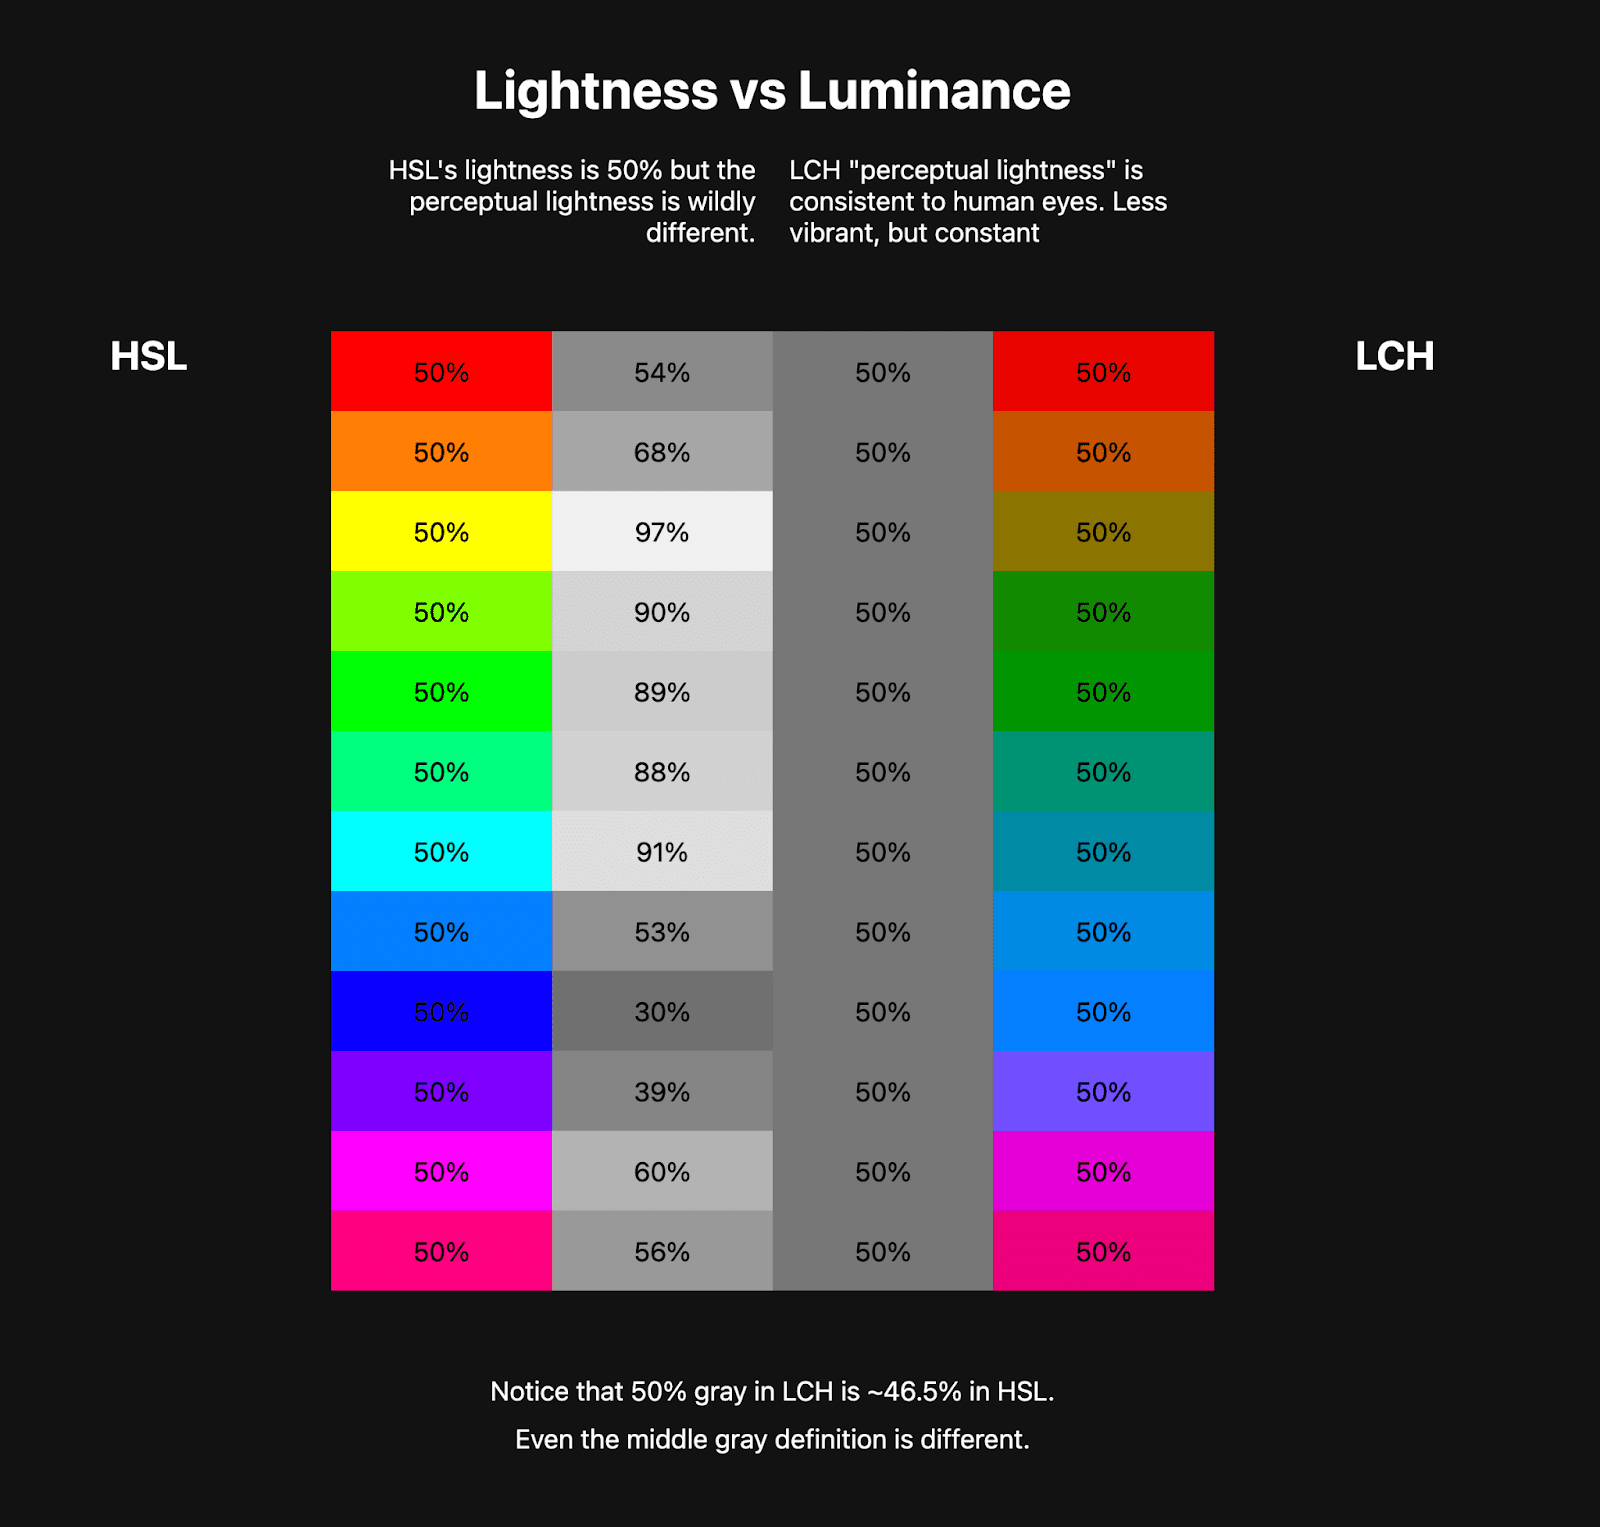 جدولان من الألوان جنبًا إلى جنب. يعرض الجدول الأول ألوان قوس قزح HSL مكوّنة من 10 ألوان تقريبًا، وبجانبه ألوان تدرّج رمادي تمثّل إضاءة ألوان HSL هذه. يعرض الجدول الثاني قوس قزح LCH، وهو أقل حيوية بكثير، لكن الألوان الرمادية بجانبه متناسقة.
    وهذا يوضح كيف أن LCH يتميز بقيمة إضاءة ثابتة وصحية بينما HSL ليس لديه.